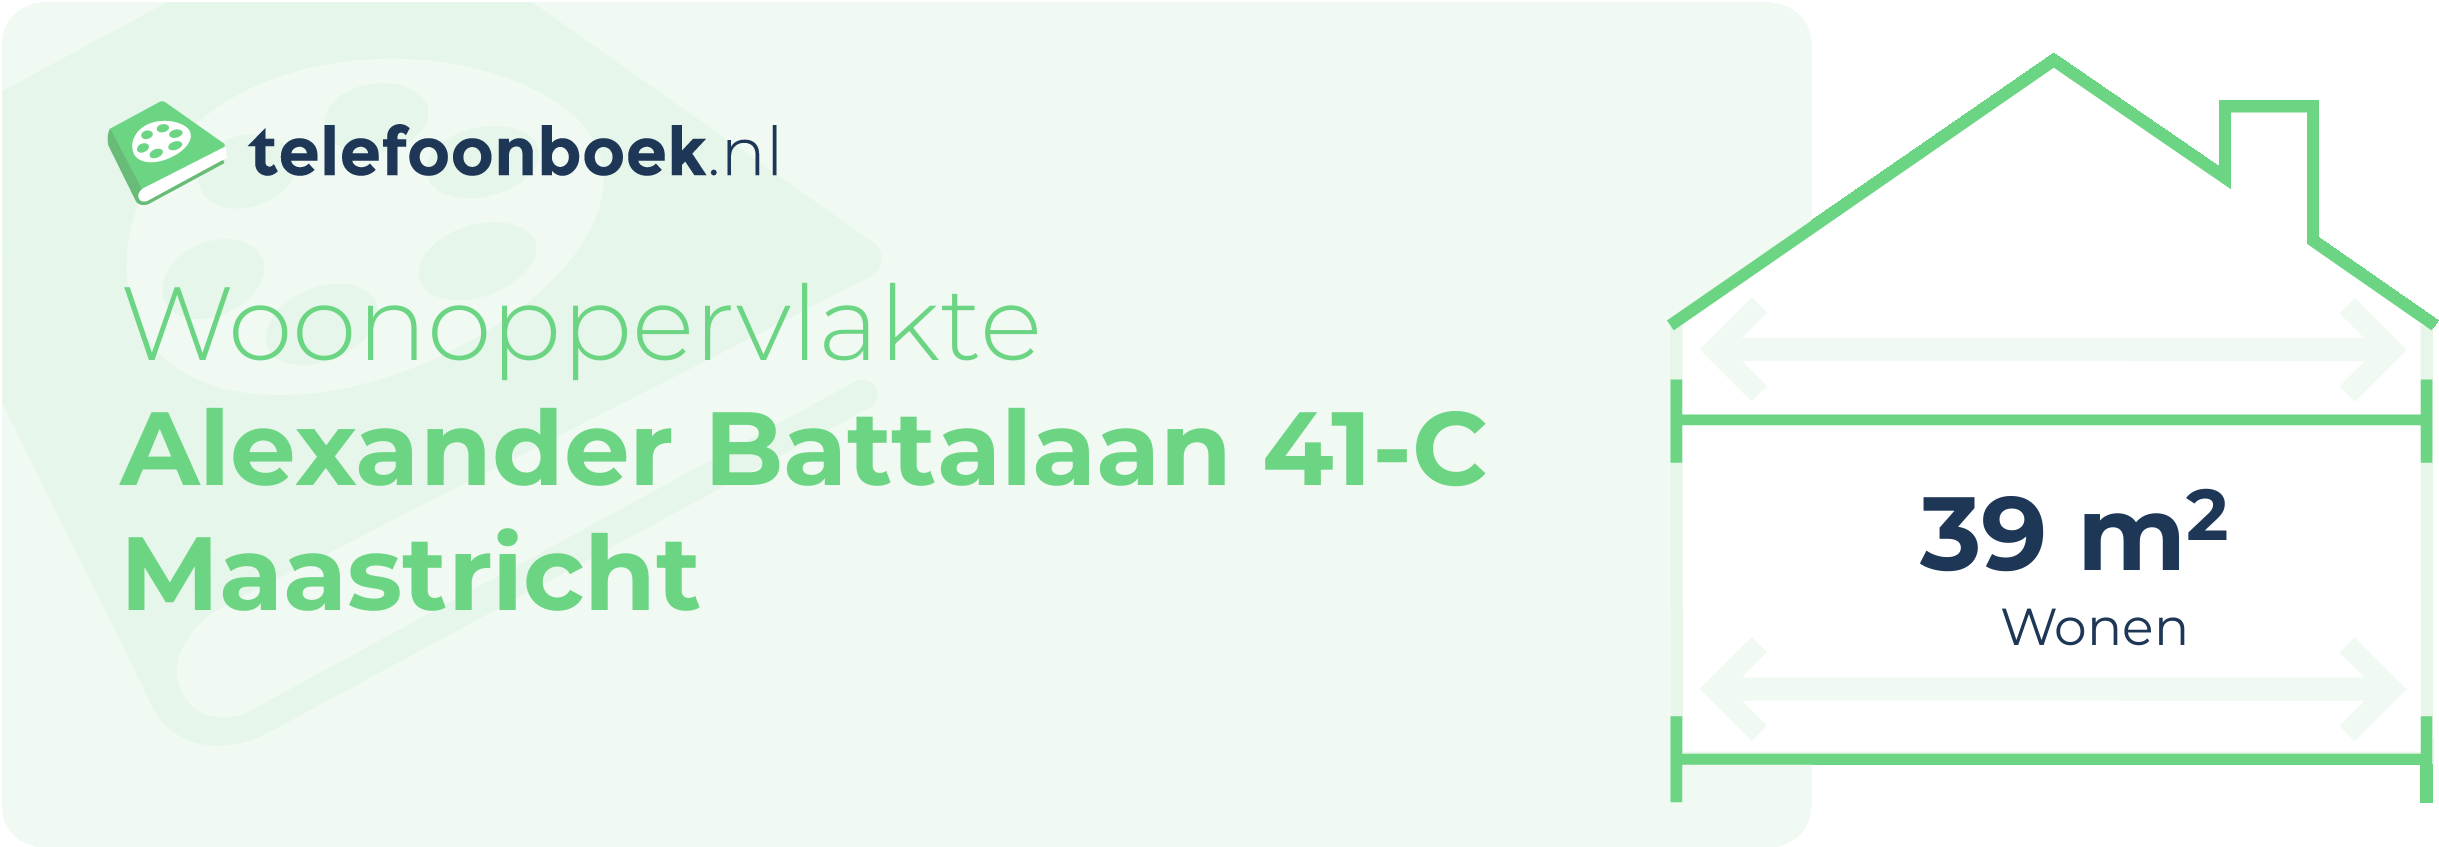 Woonoppervlakte Alexander Battalaan 41-C Maastricht